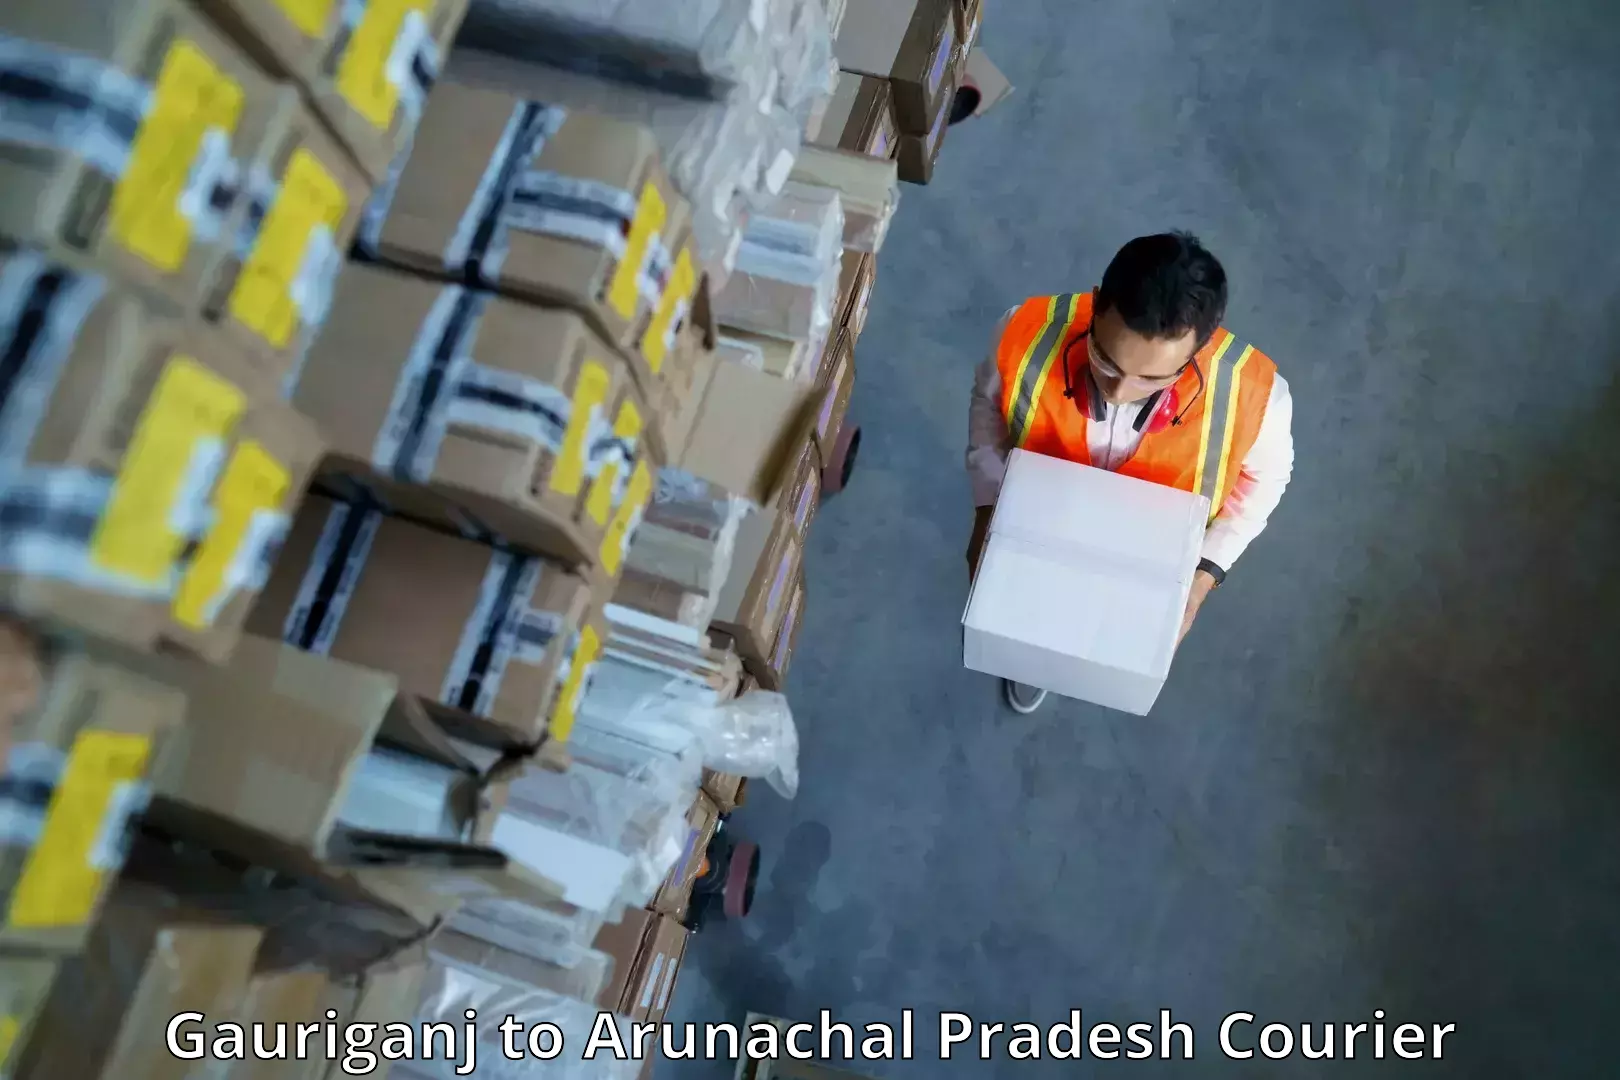 Ocean freight courier Gauriganj to Arunachal Pradesh